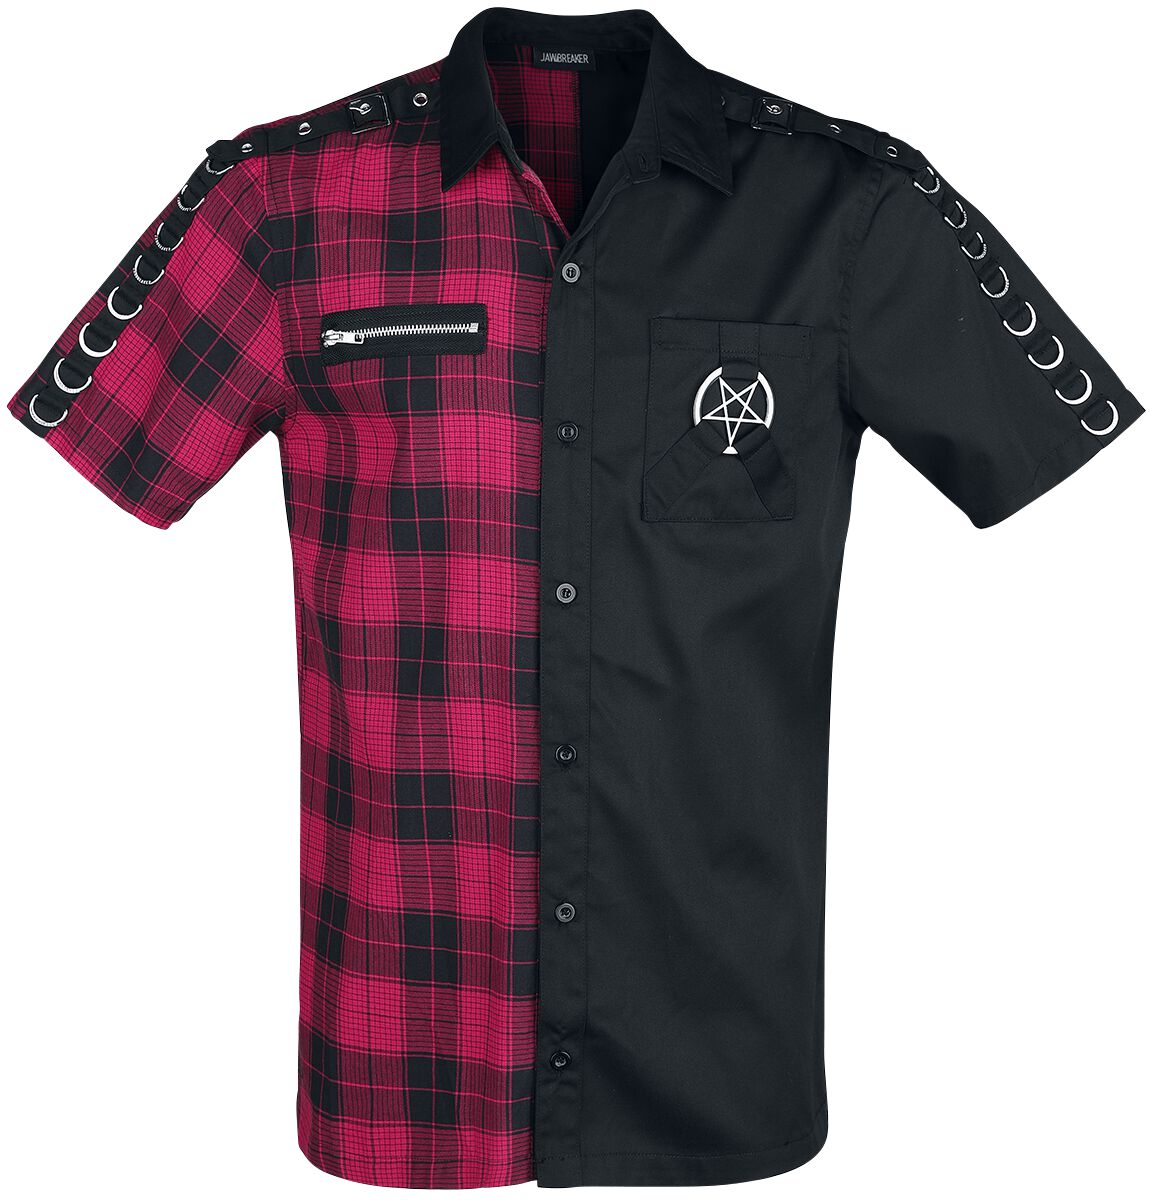 Jawbreaker Split Shirt Short-sleeved Shirt black red